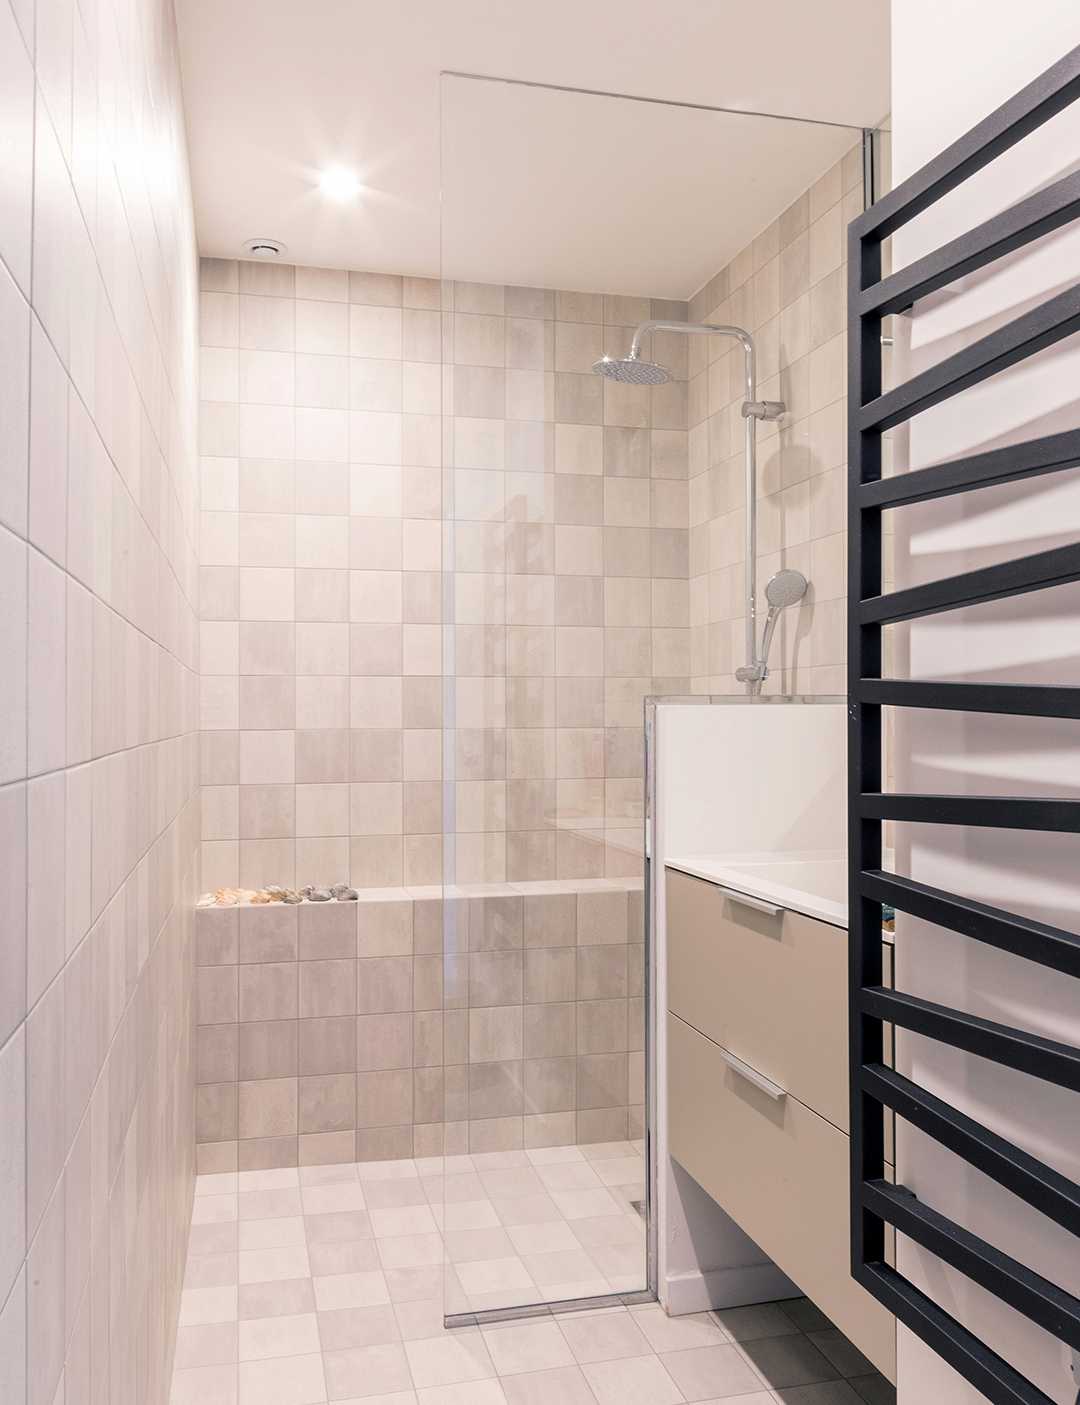 Salle de bain amenagée par un architecte d'interieur à Paris